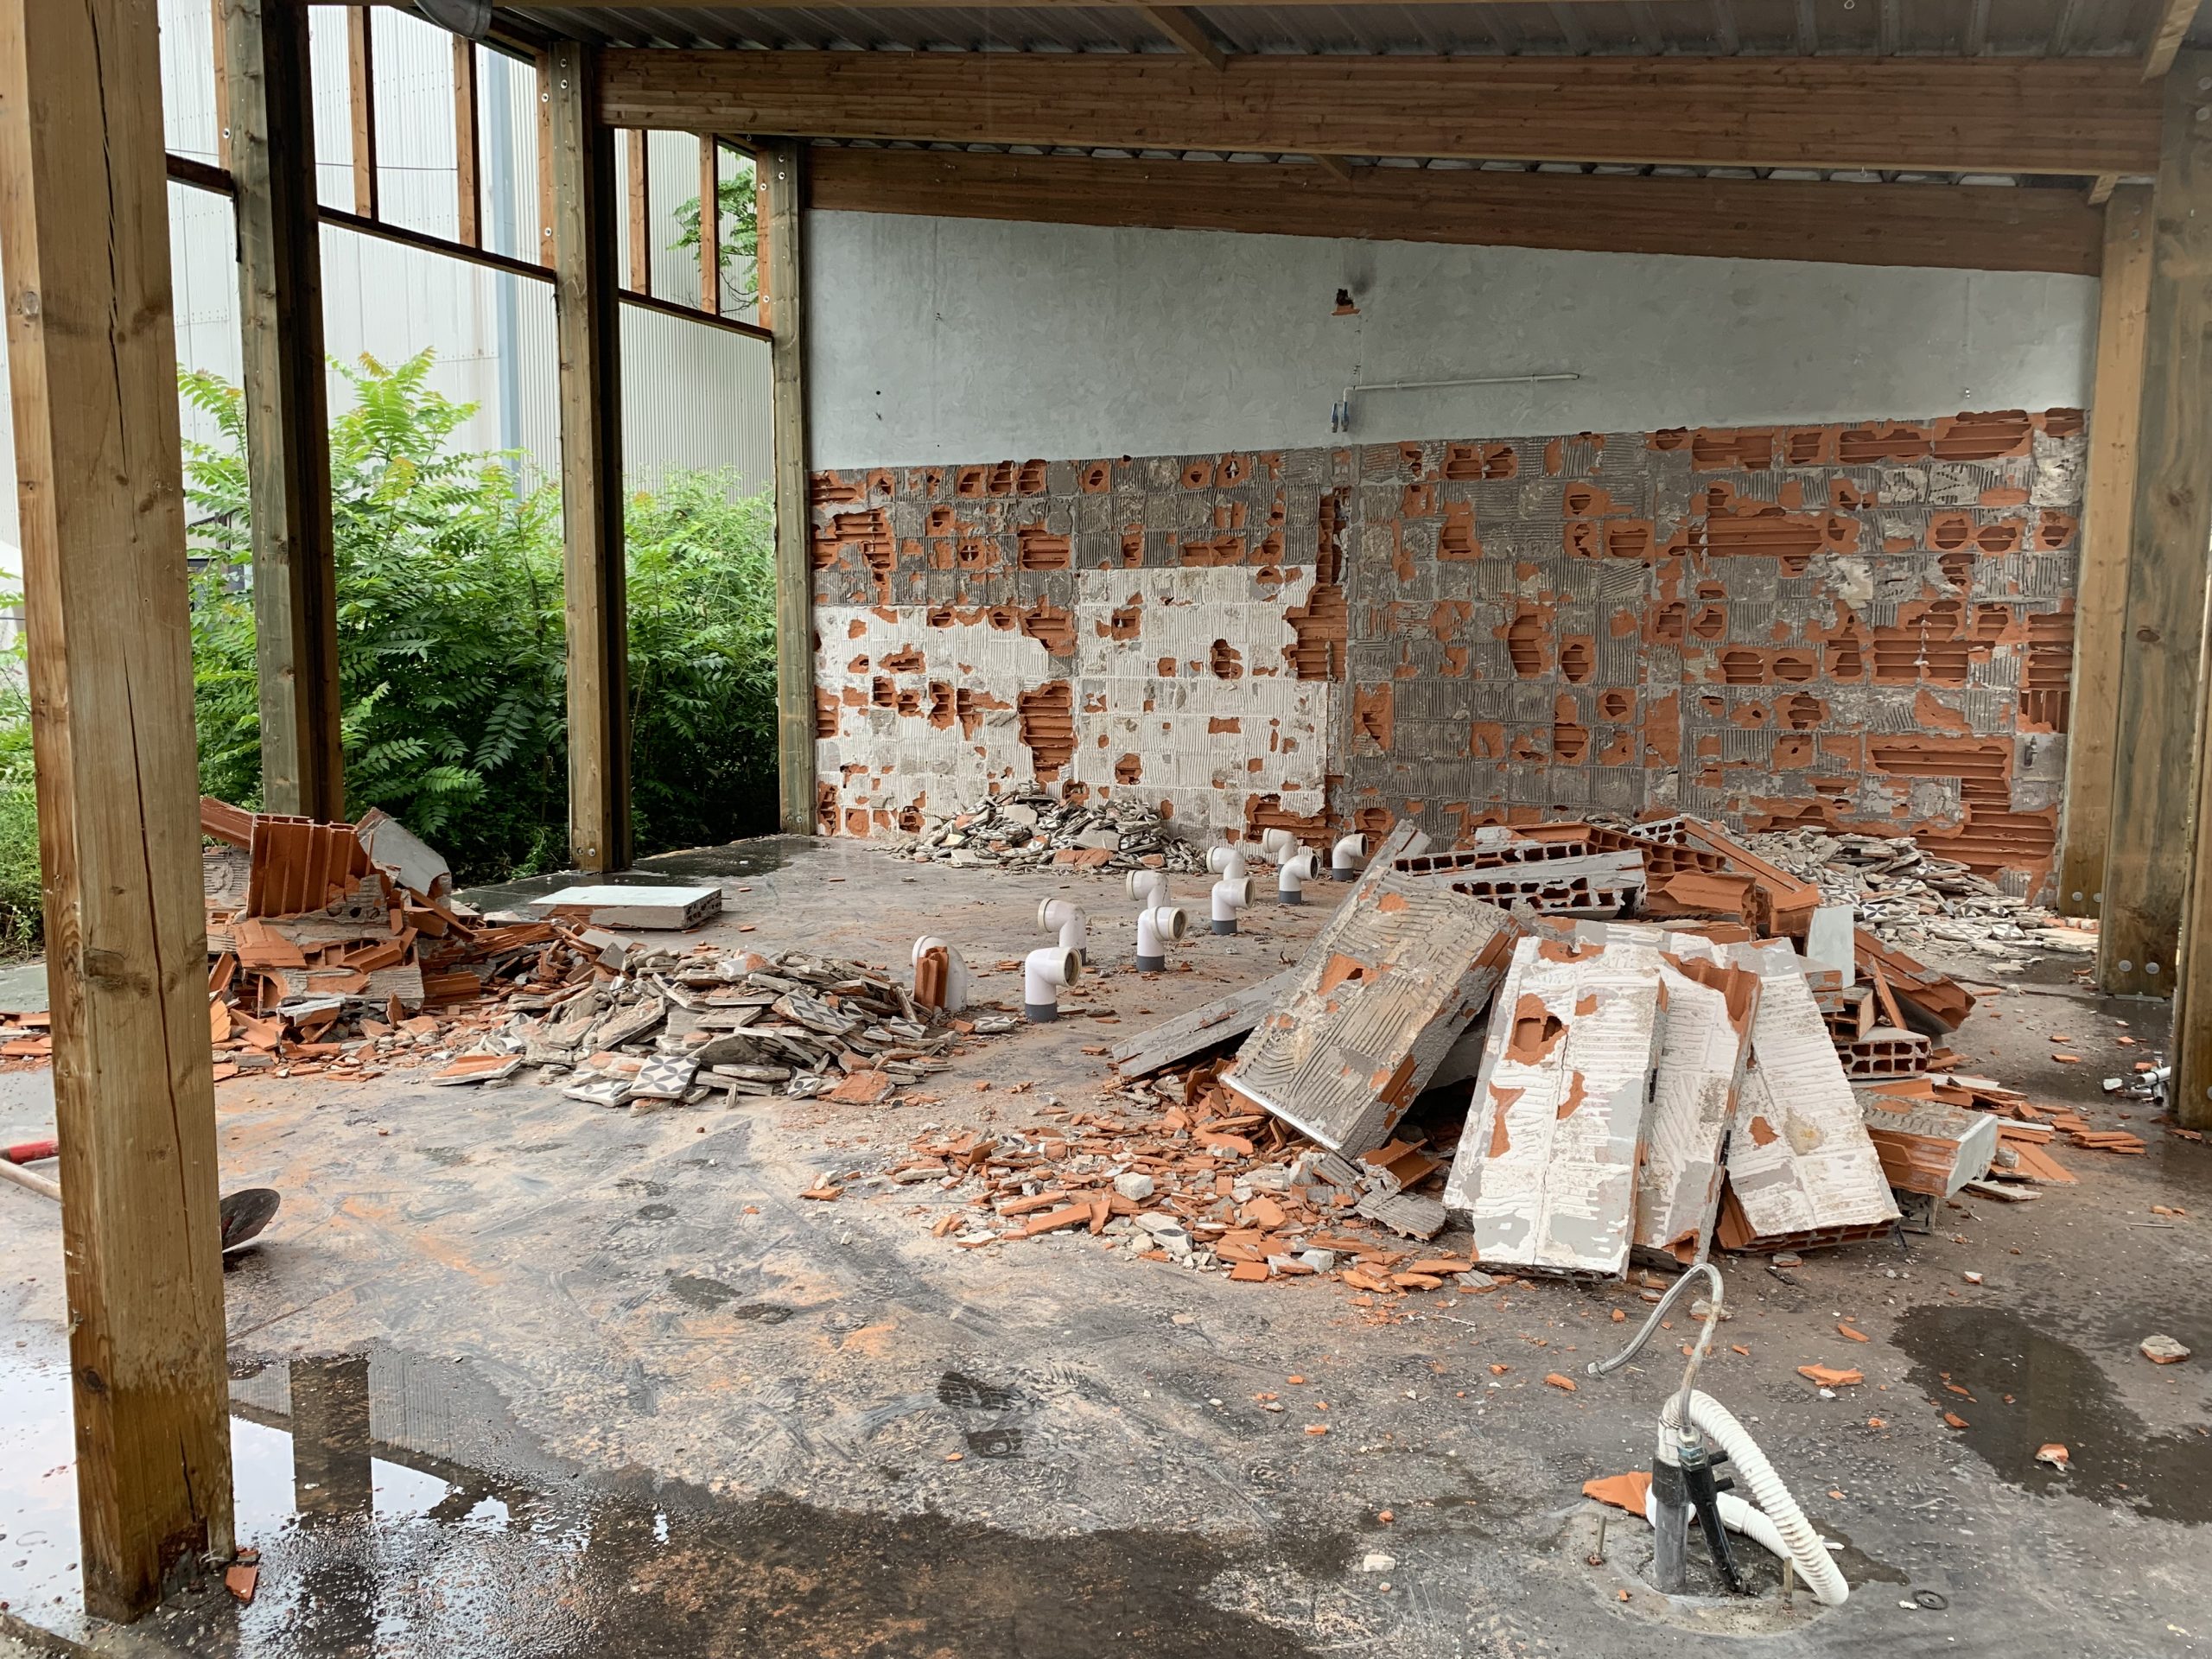 Juin 2022
Les sanitaires du Grand chapiteau ont été démontés. L’ensemble des céramiques et les briques seront réutilisés. 
